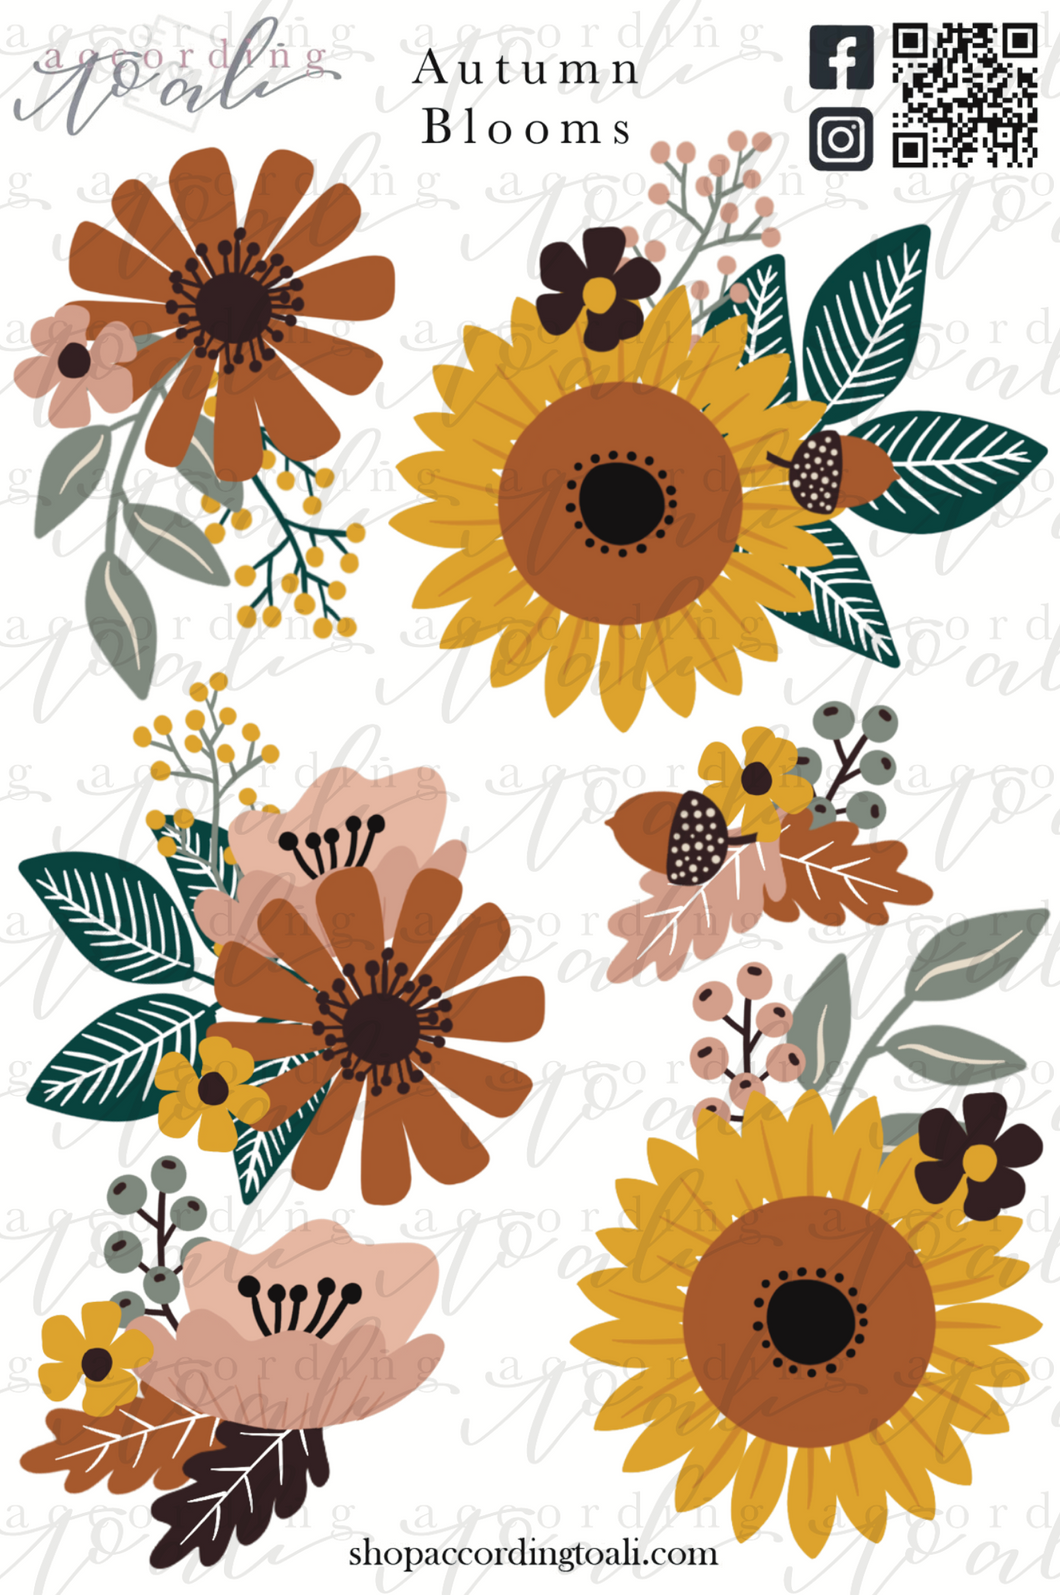 Autumn Blooms Sticker Sheet